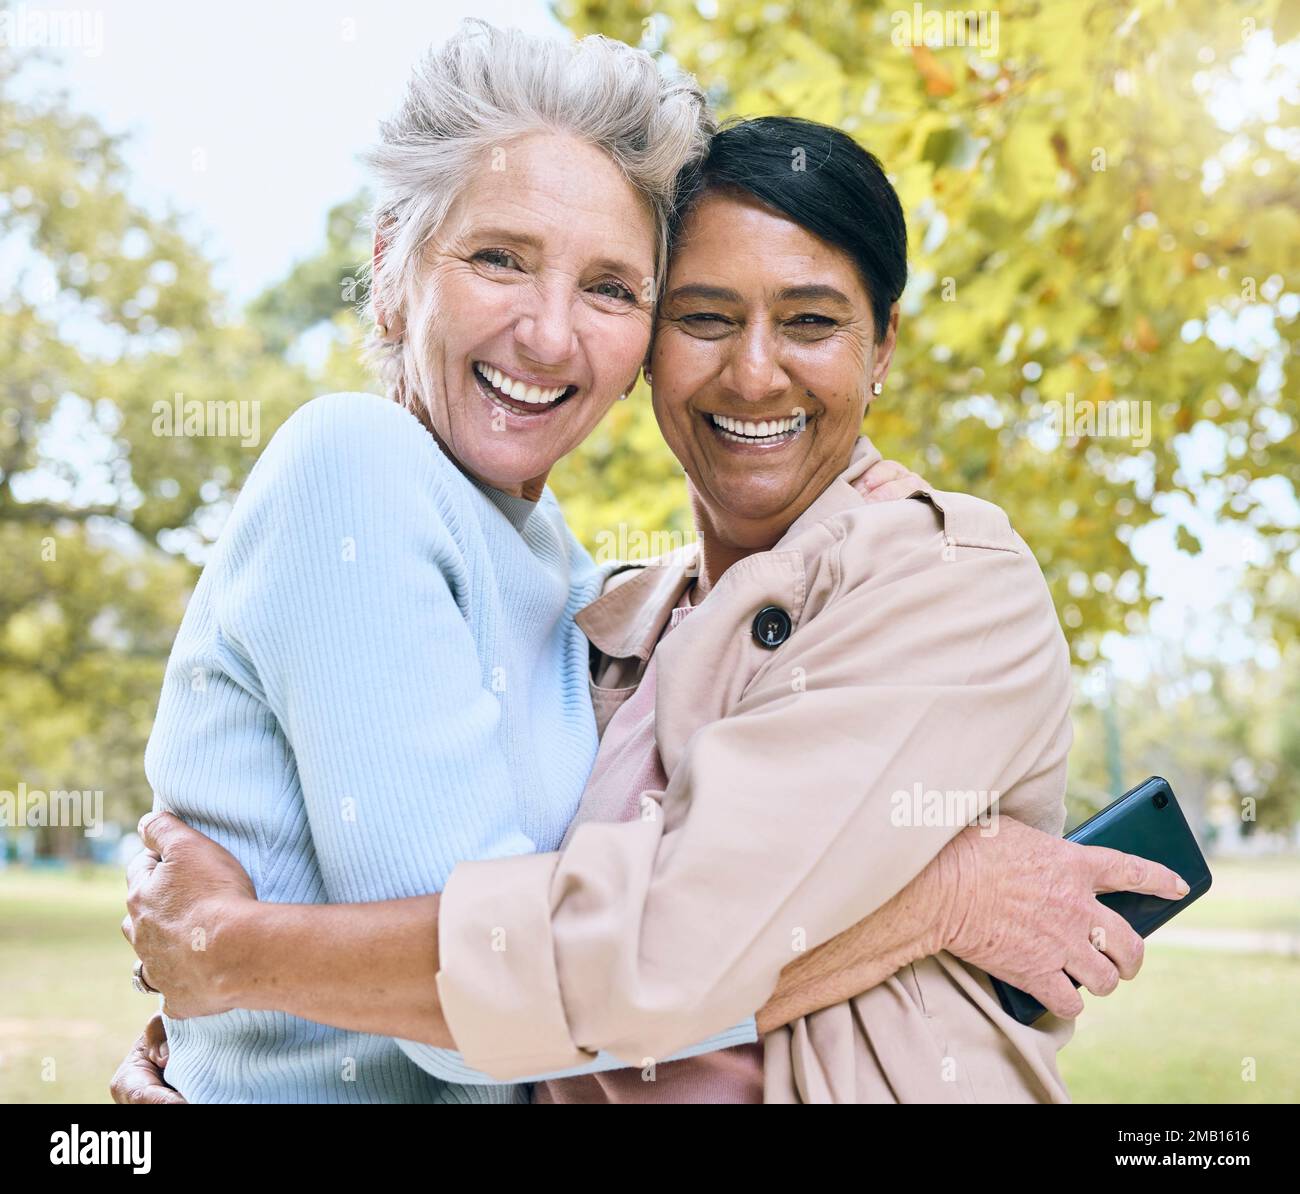 Seniorinnen, sich im Naturpark, im Garten oder in entspannter Umgebung anfreunden oder ein Porträt umarmen, um soziale Medien, Profilbilder oder Erinnerungen zu nutzen. Lächeln, glückliche Freunde oder Stockfoto